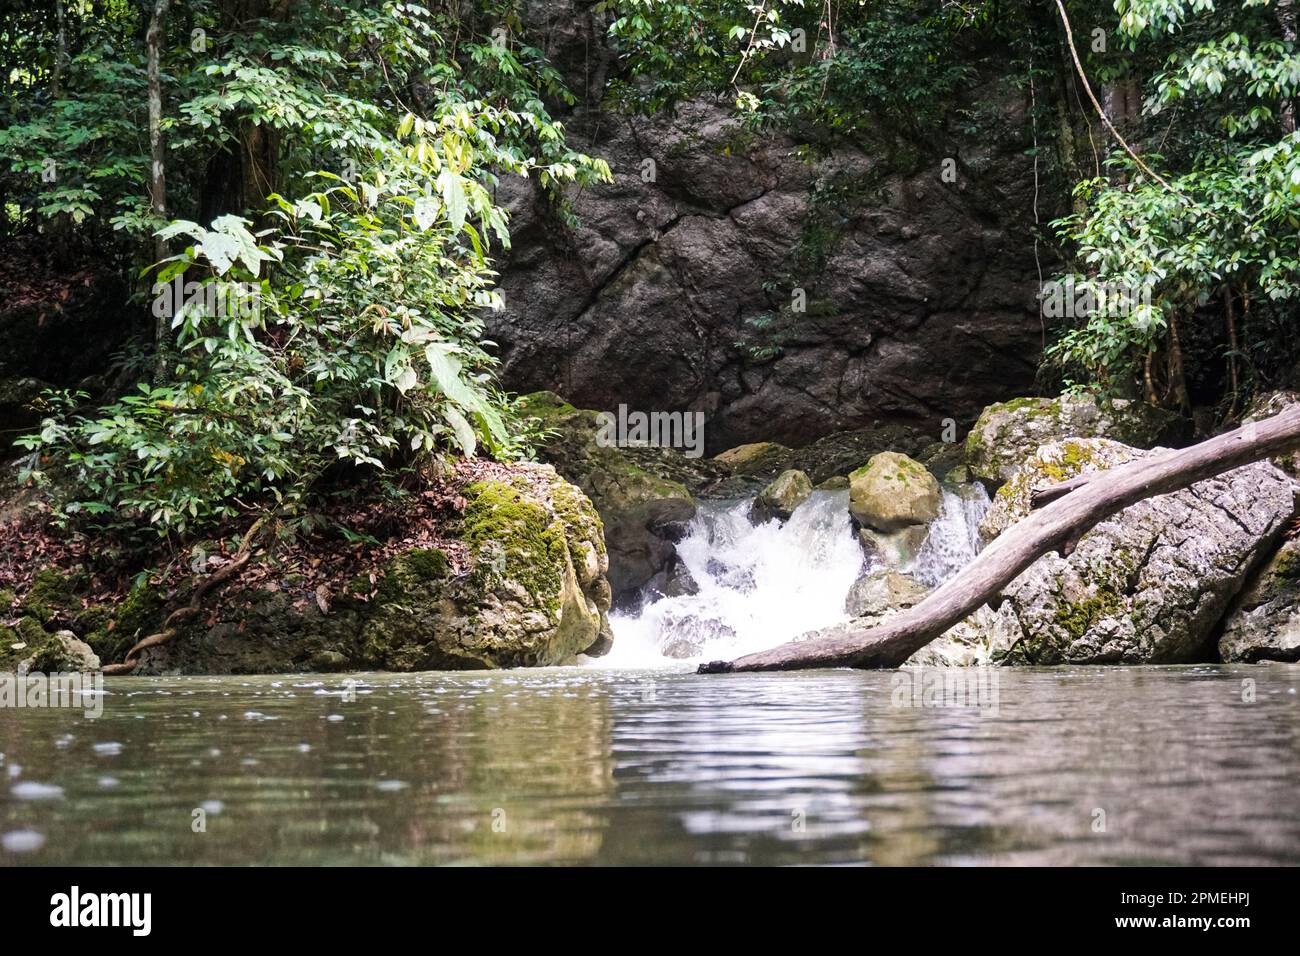 Gem caché de la nature : Batu Bawen, la sérénité d'une petite chute d'eau d'une colline de Karst Banque D'Images